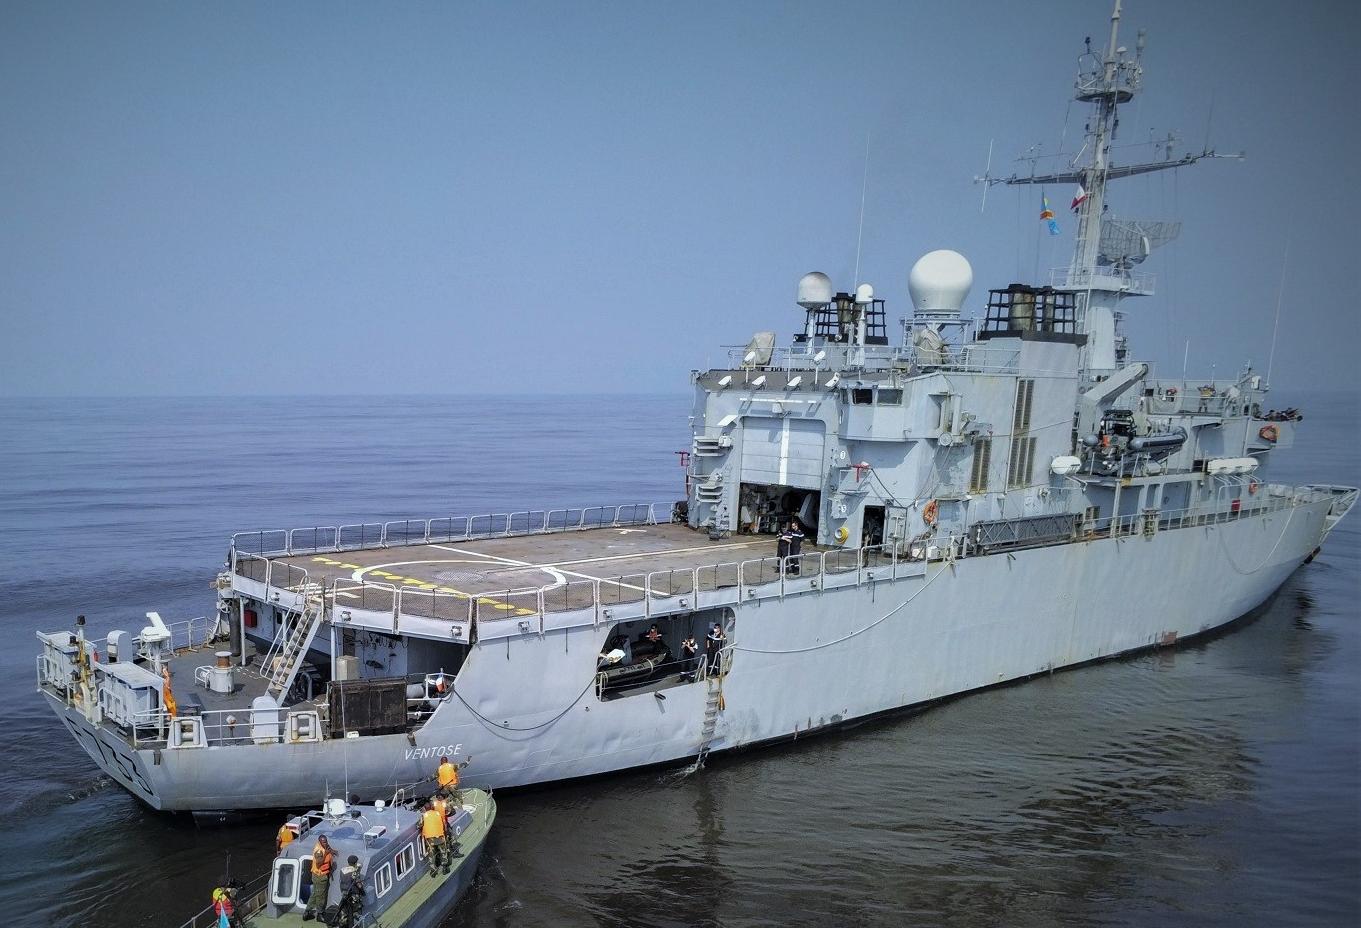 OPERATION CORYMBE – Fin de mandat pour les marins du Ventôse dans le golfe de Guinée 